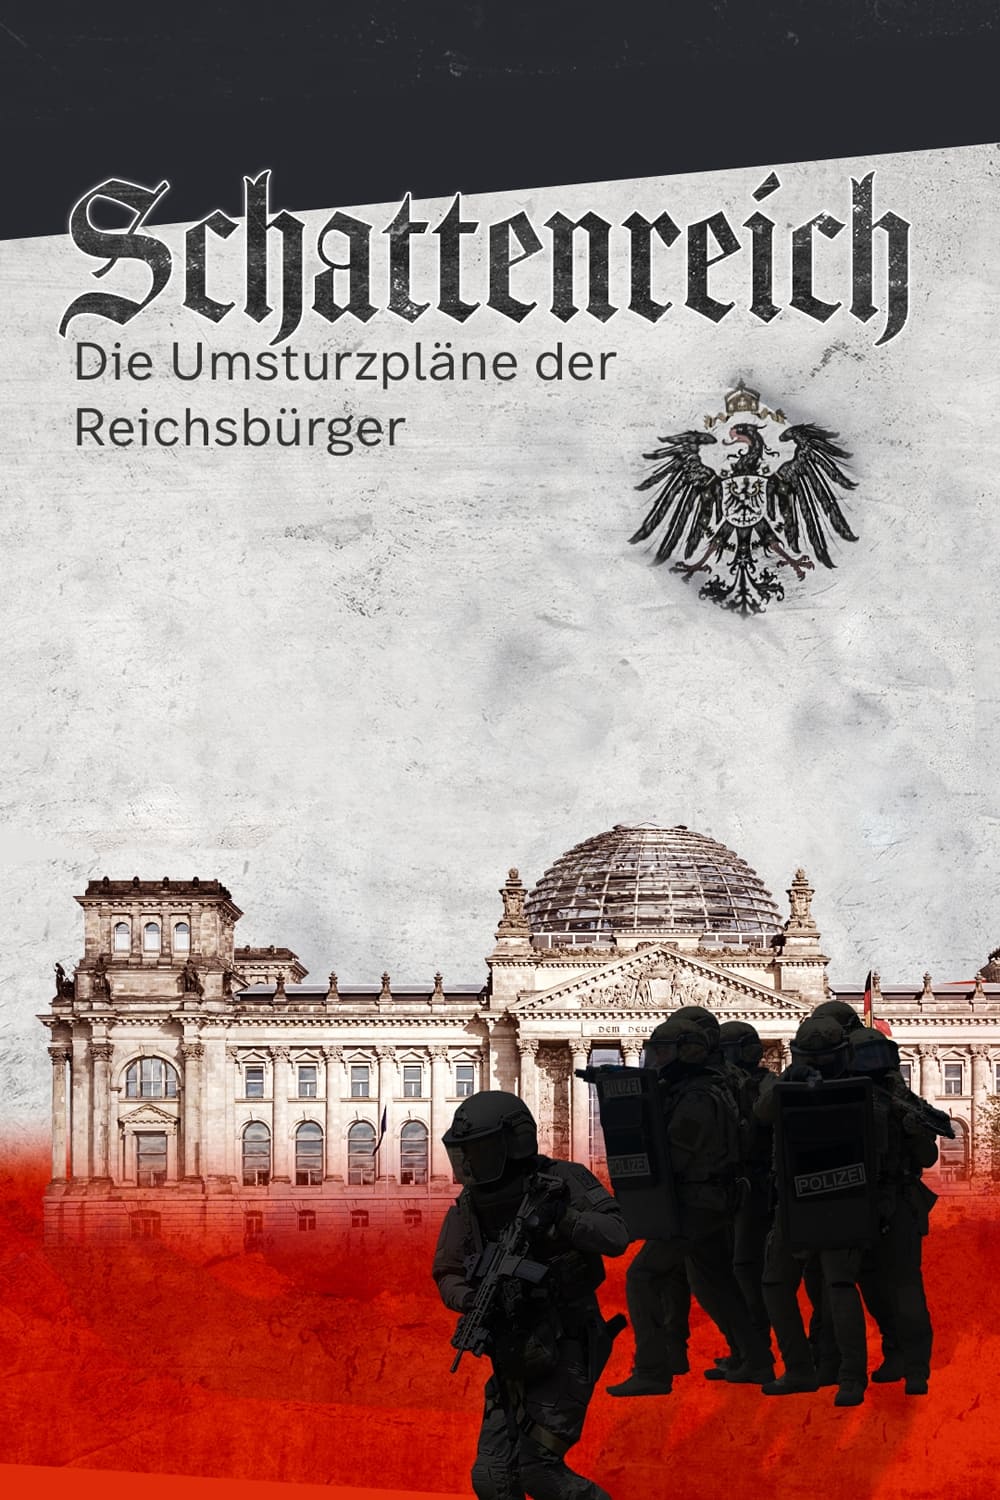 Schattenreich - Die Umsturzpläne der Reichsbürger